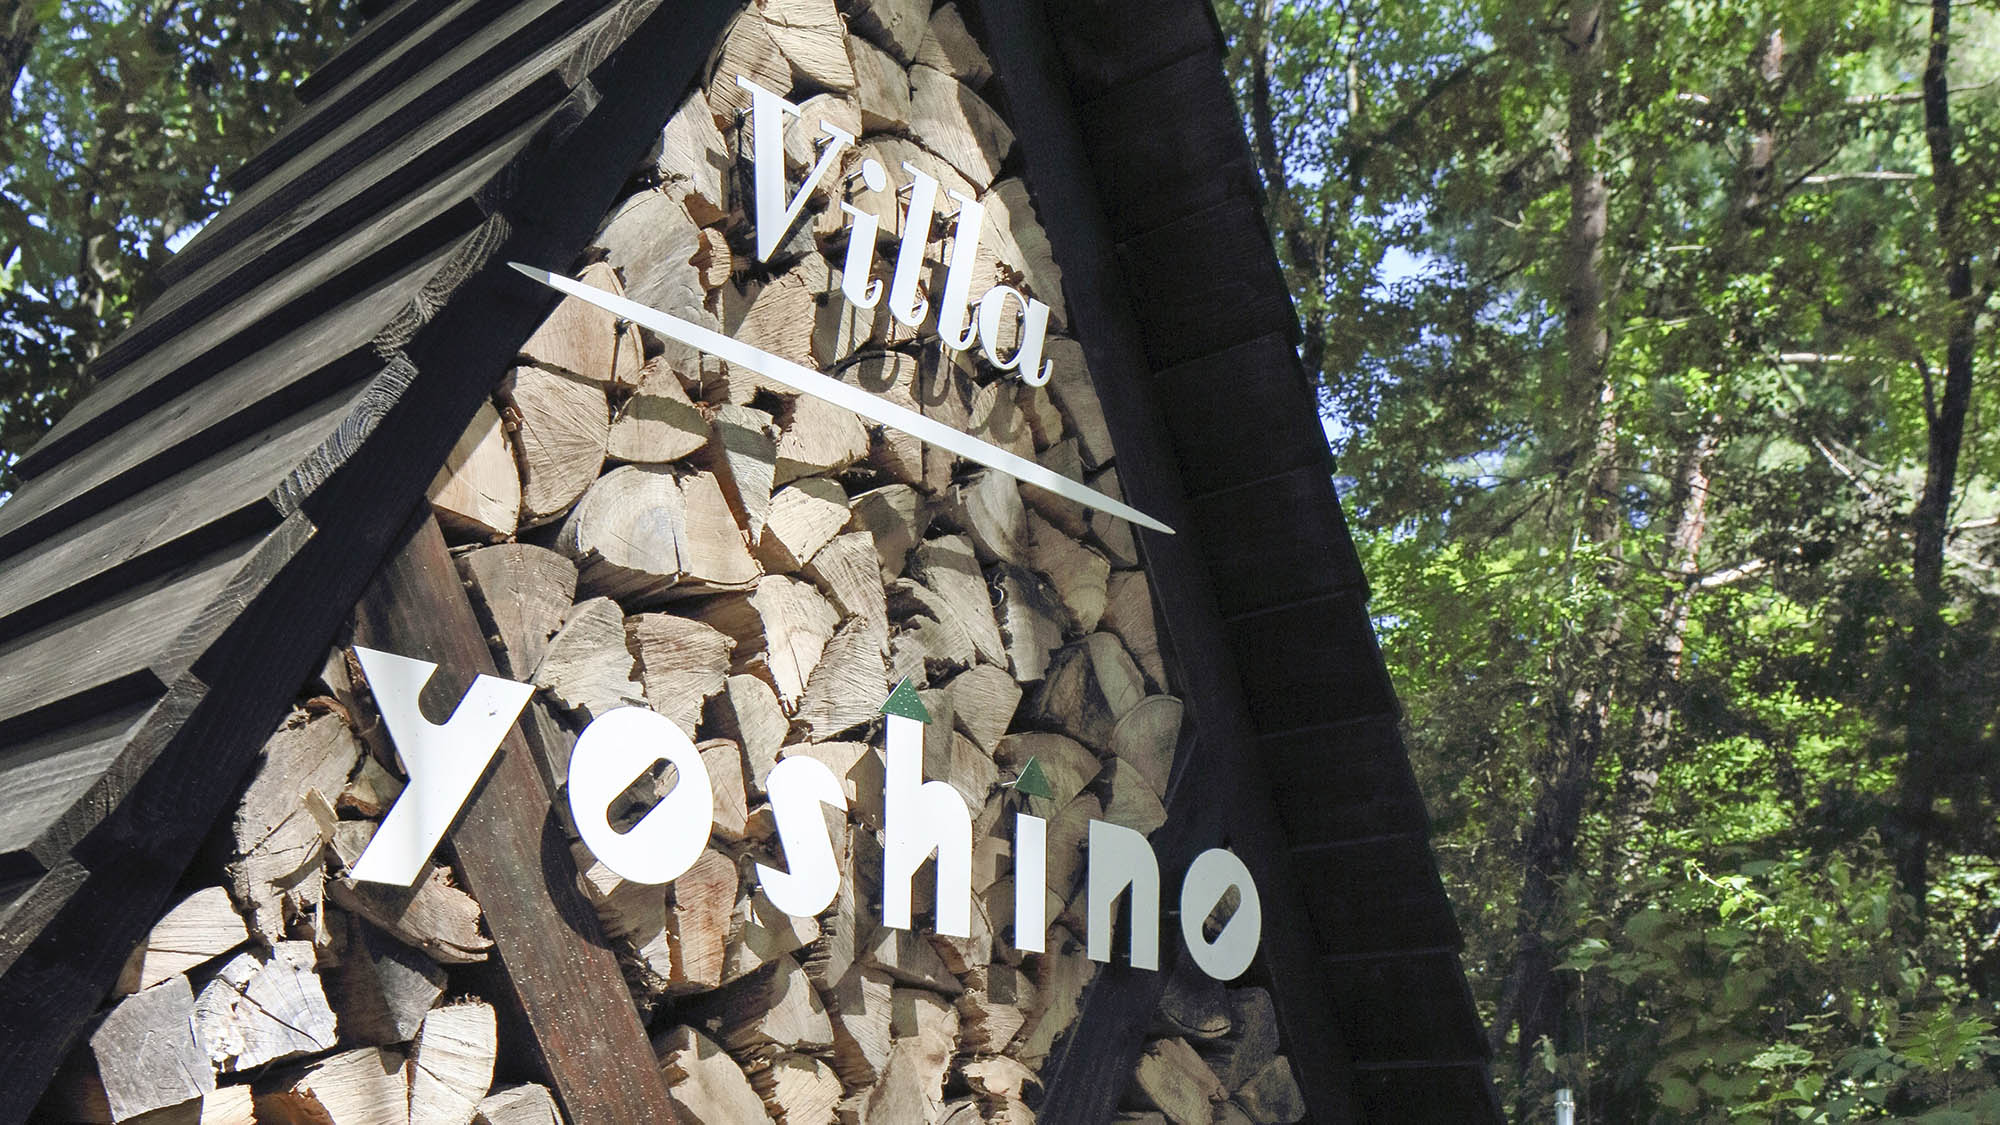 ・【看板】三角屋根の貸別荘Villa Yoshinoはこちらでございます